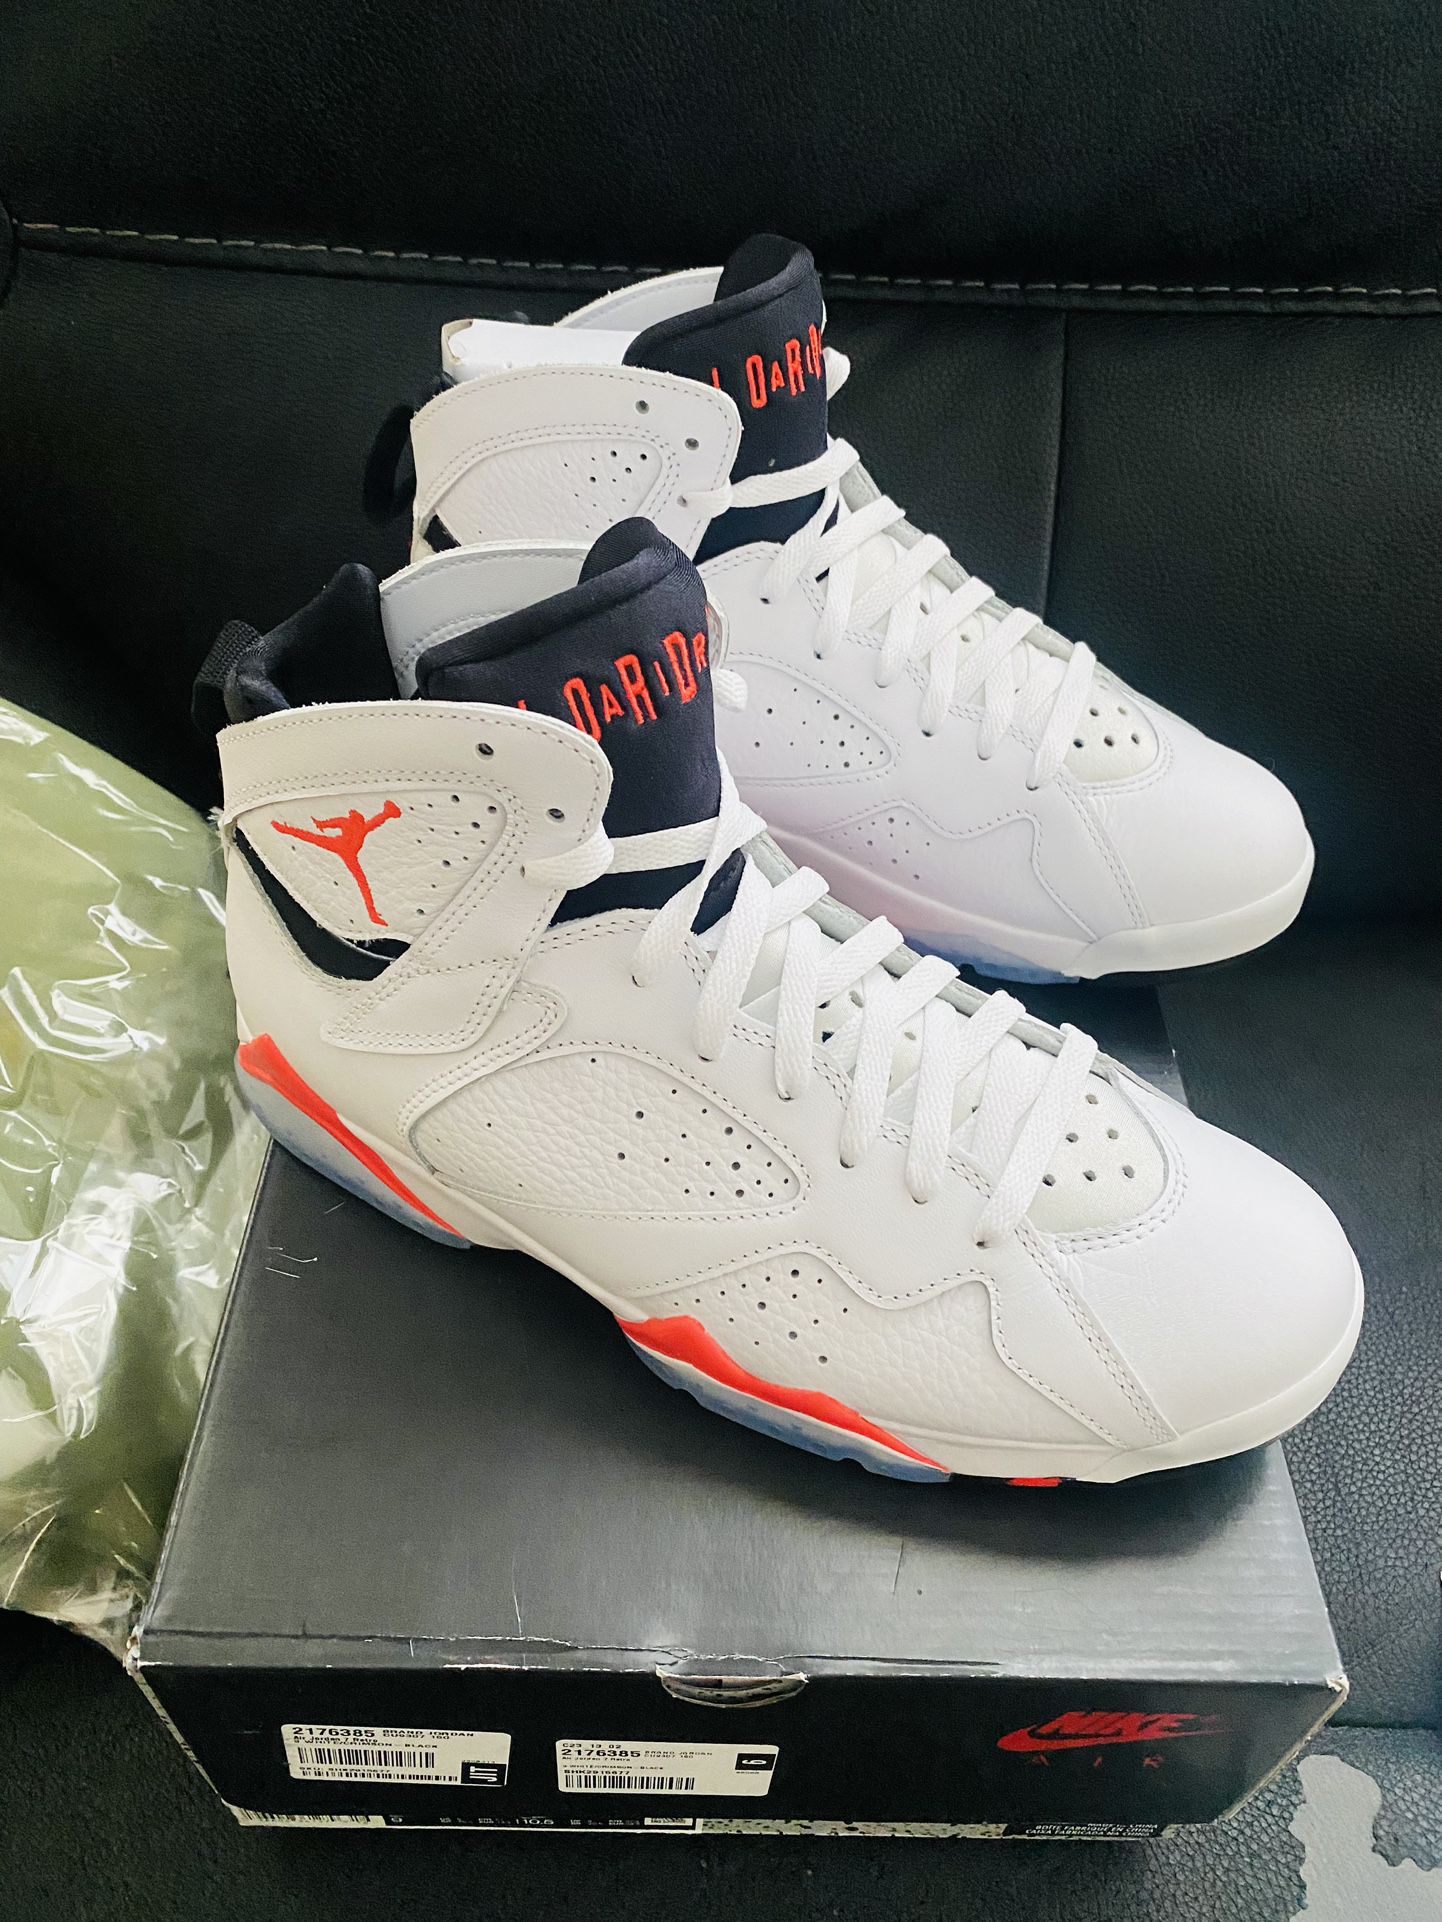 Jordan 7 White infrared Size 9 Mens Brand New